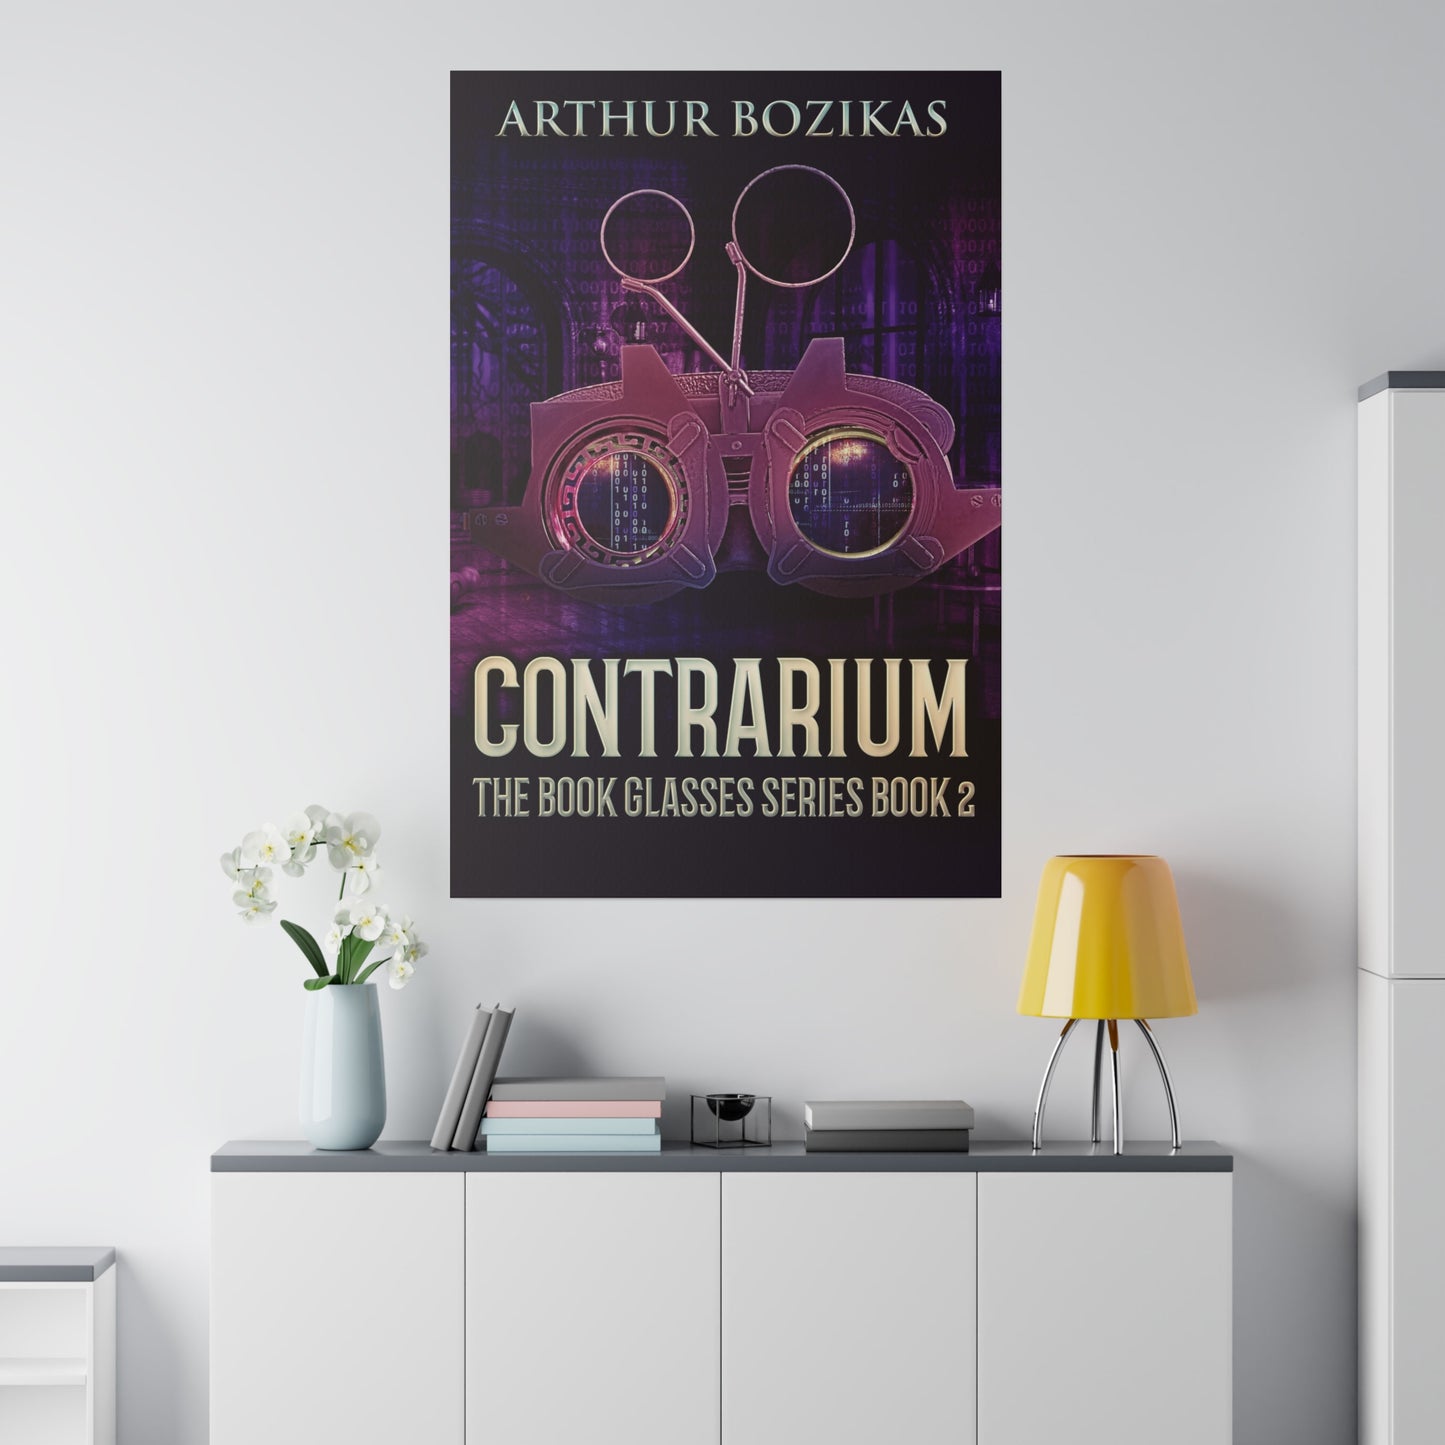 Contrarium - Canvas